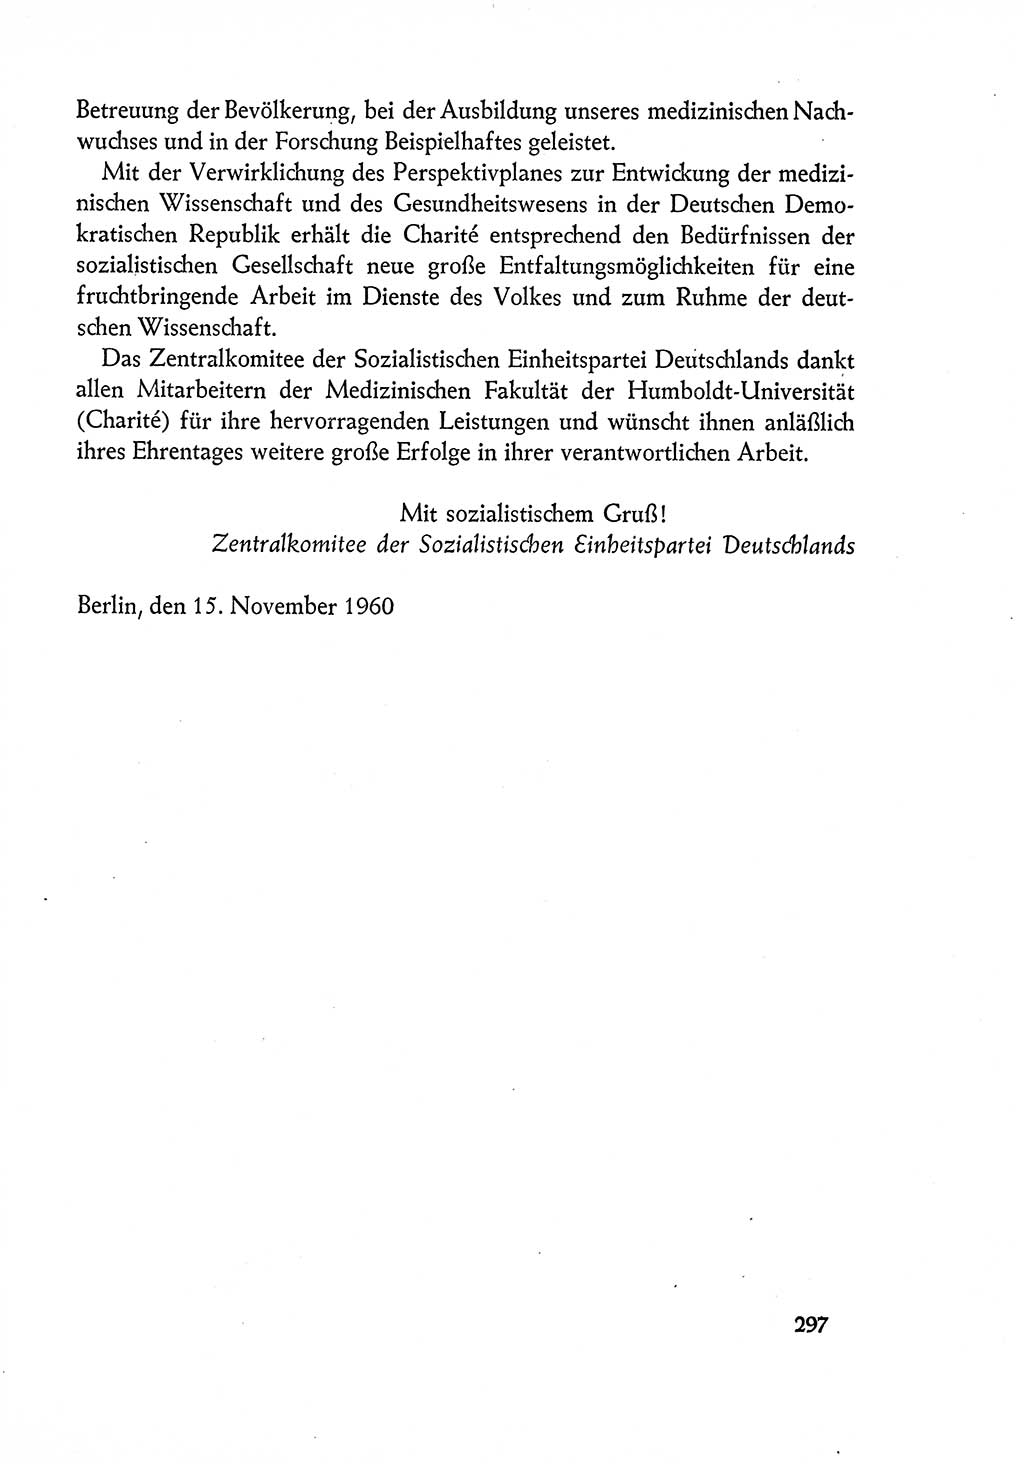 Dokumente der Sozialistischen Einheitspartei Deutschlands (SED) [Deutsche Demokratische Republik (DDR)] 1960-1961, Seite 297 (Dok. SED DDR 1960-1961, S. 297)